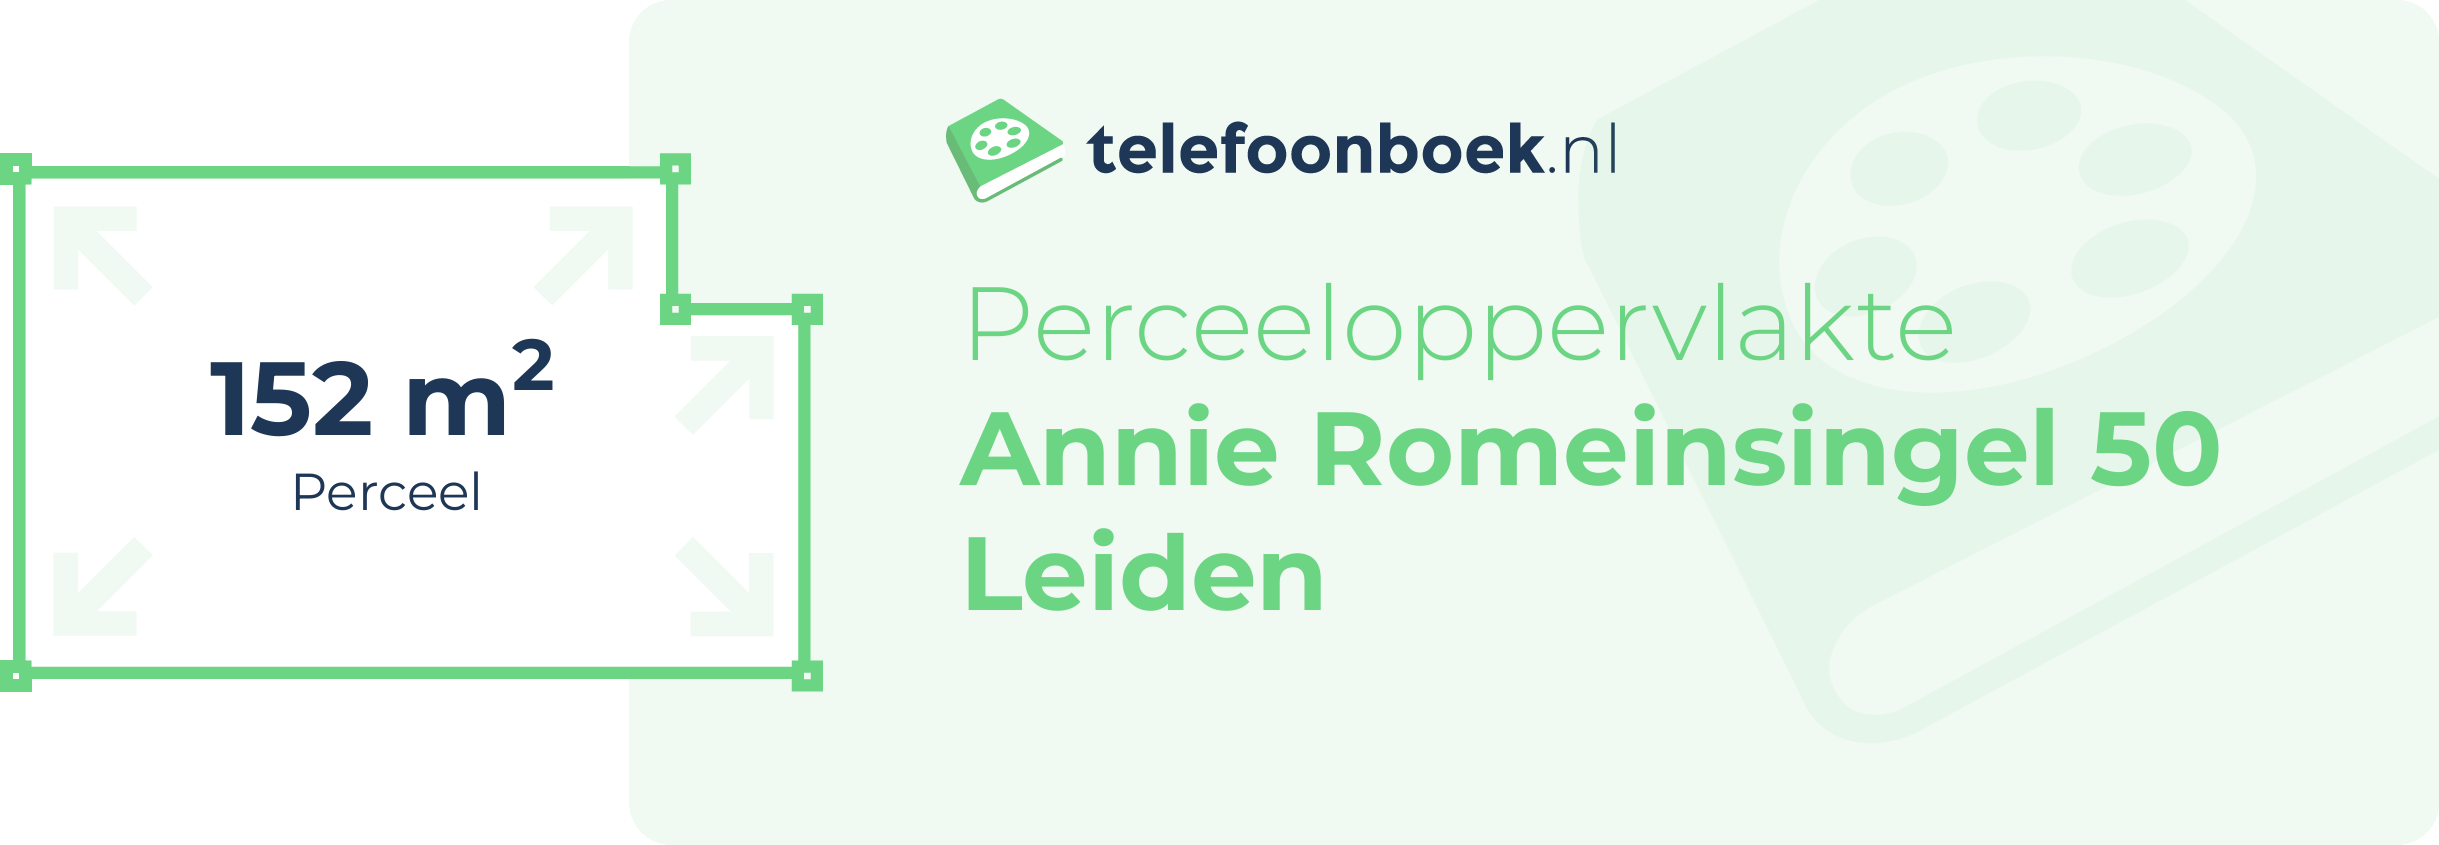 Perceeloppervlakte Annie Romeinsingel 50 Leiden